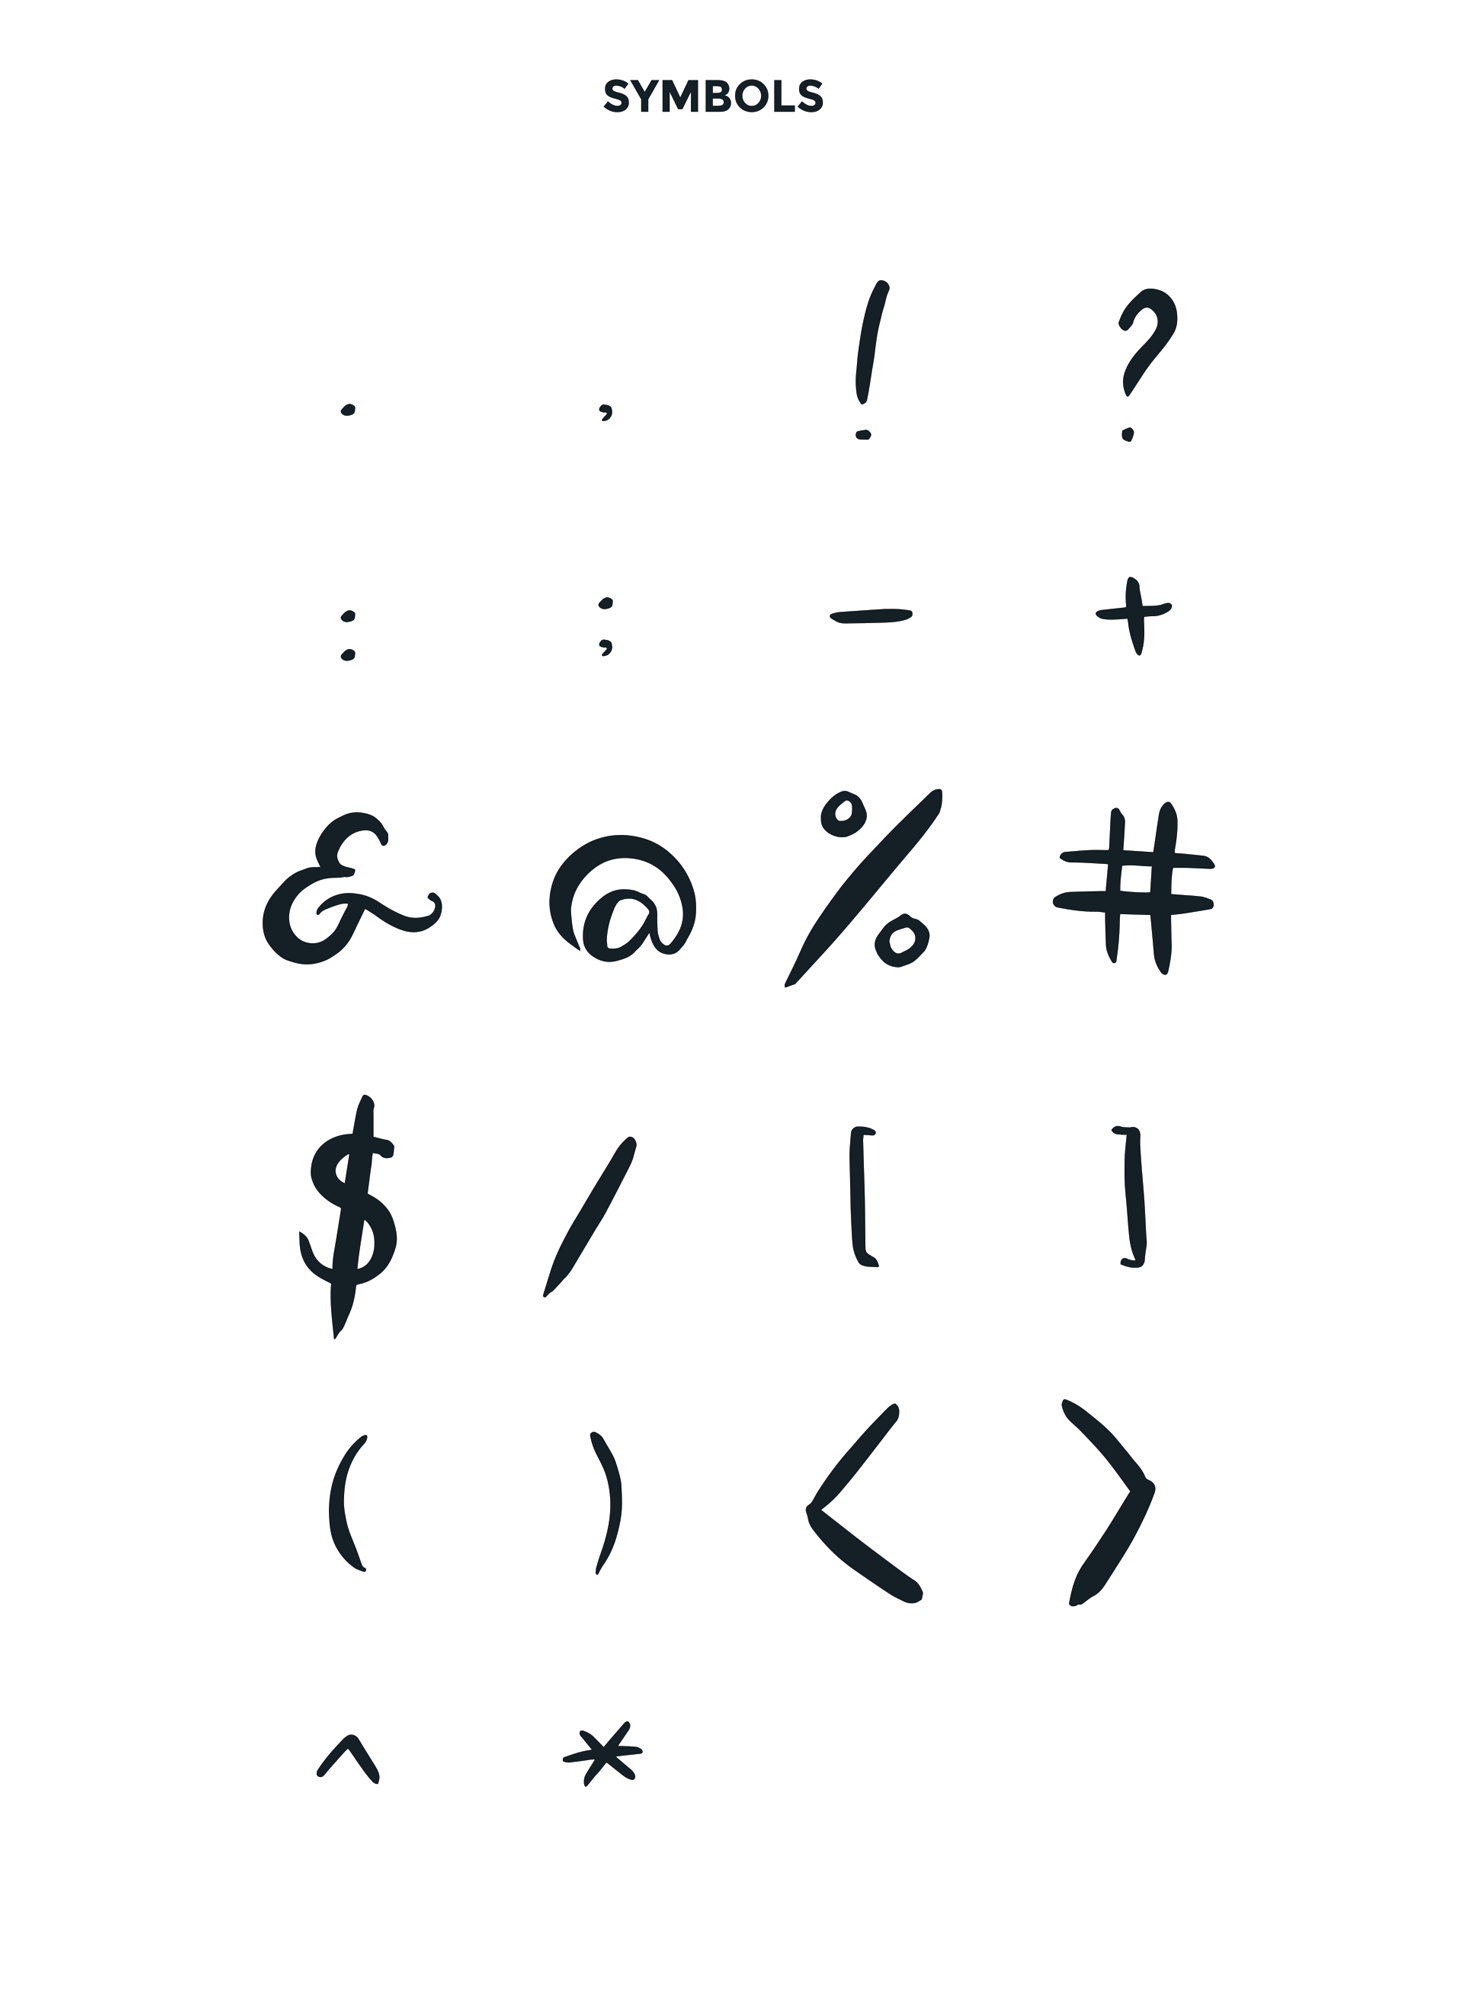 LUNA Free Font - script